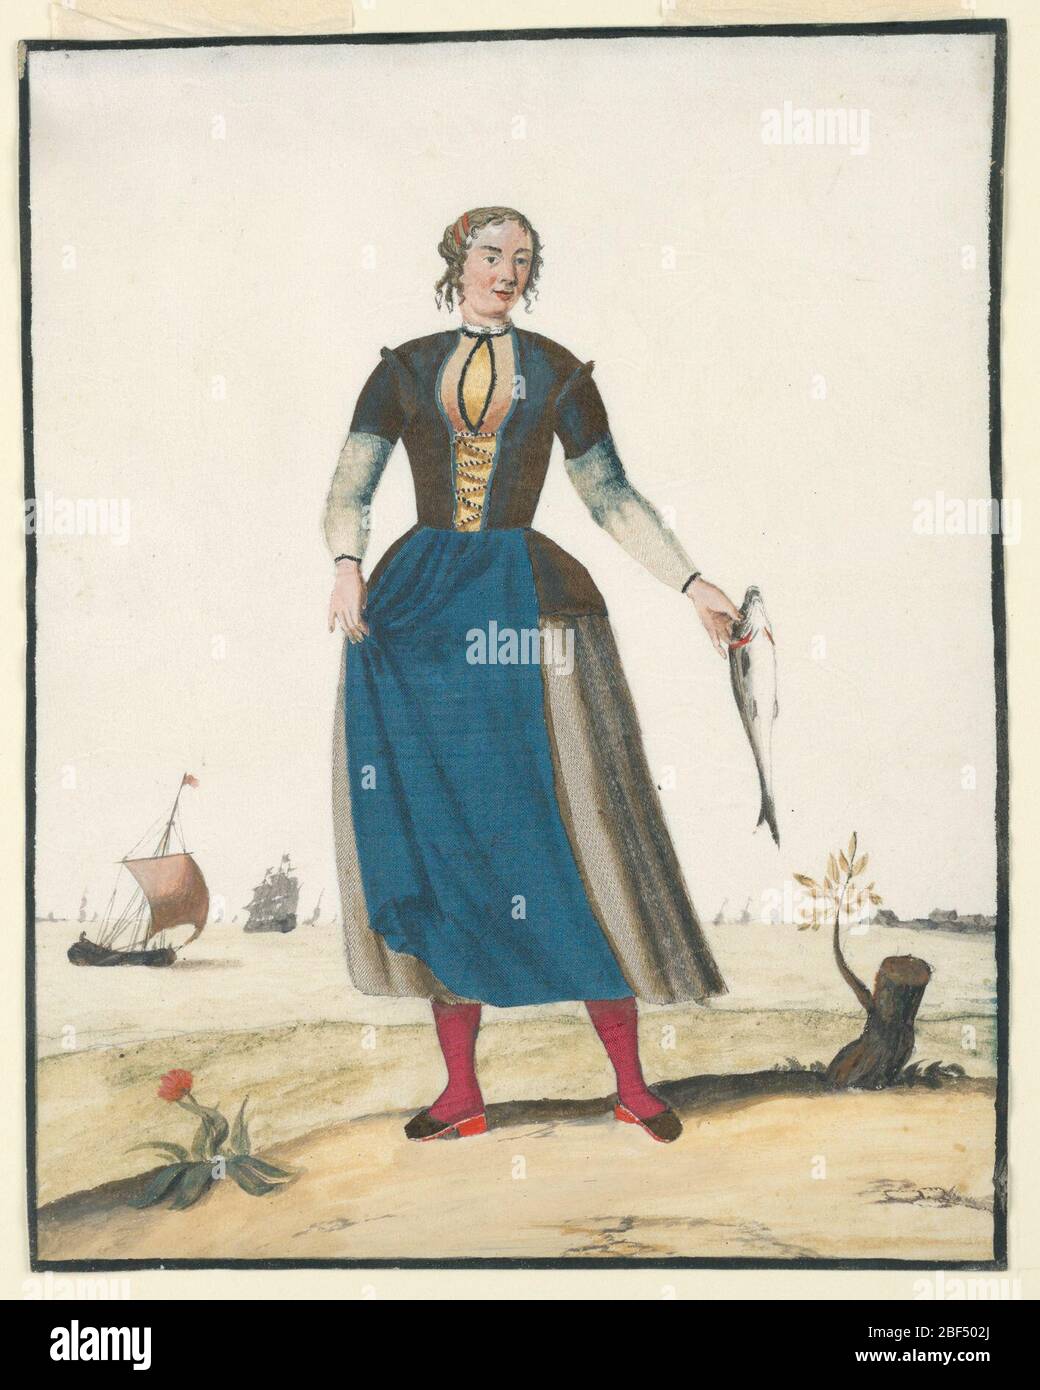 Fischerin mit einem Fang. Eine stehende Fischerin trägt einen roten Schlauch und eine blaue Schürze. Sie hält einen großen Fisch in der linken Hand. Segelschiff sichtbar im Hintergrund, und eine Blume und Stumpf im Vordergrund. Stockfoto